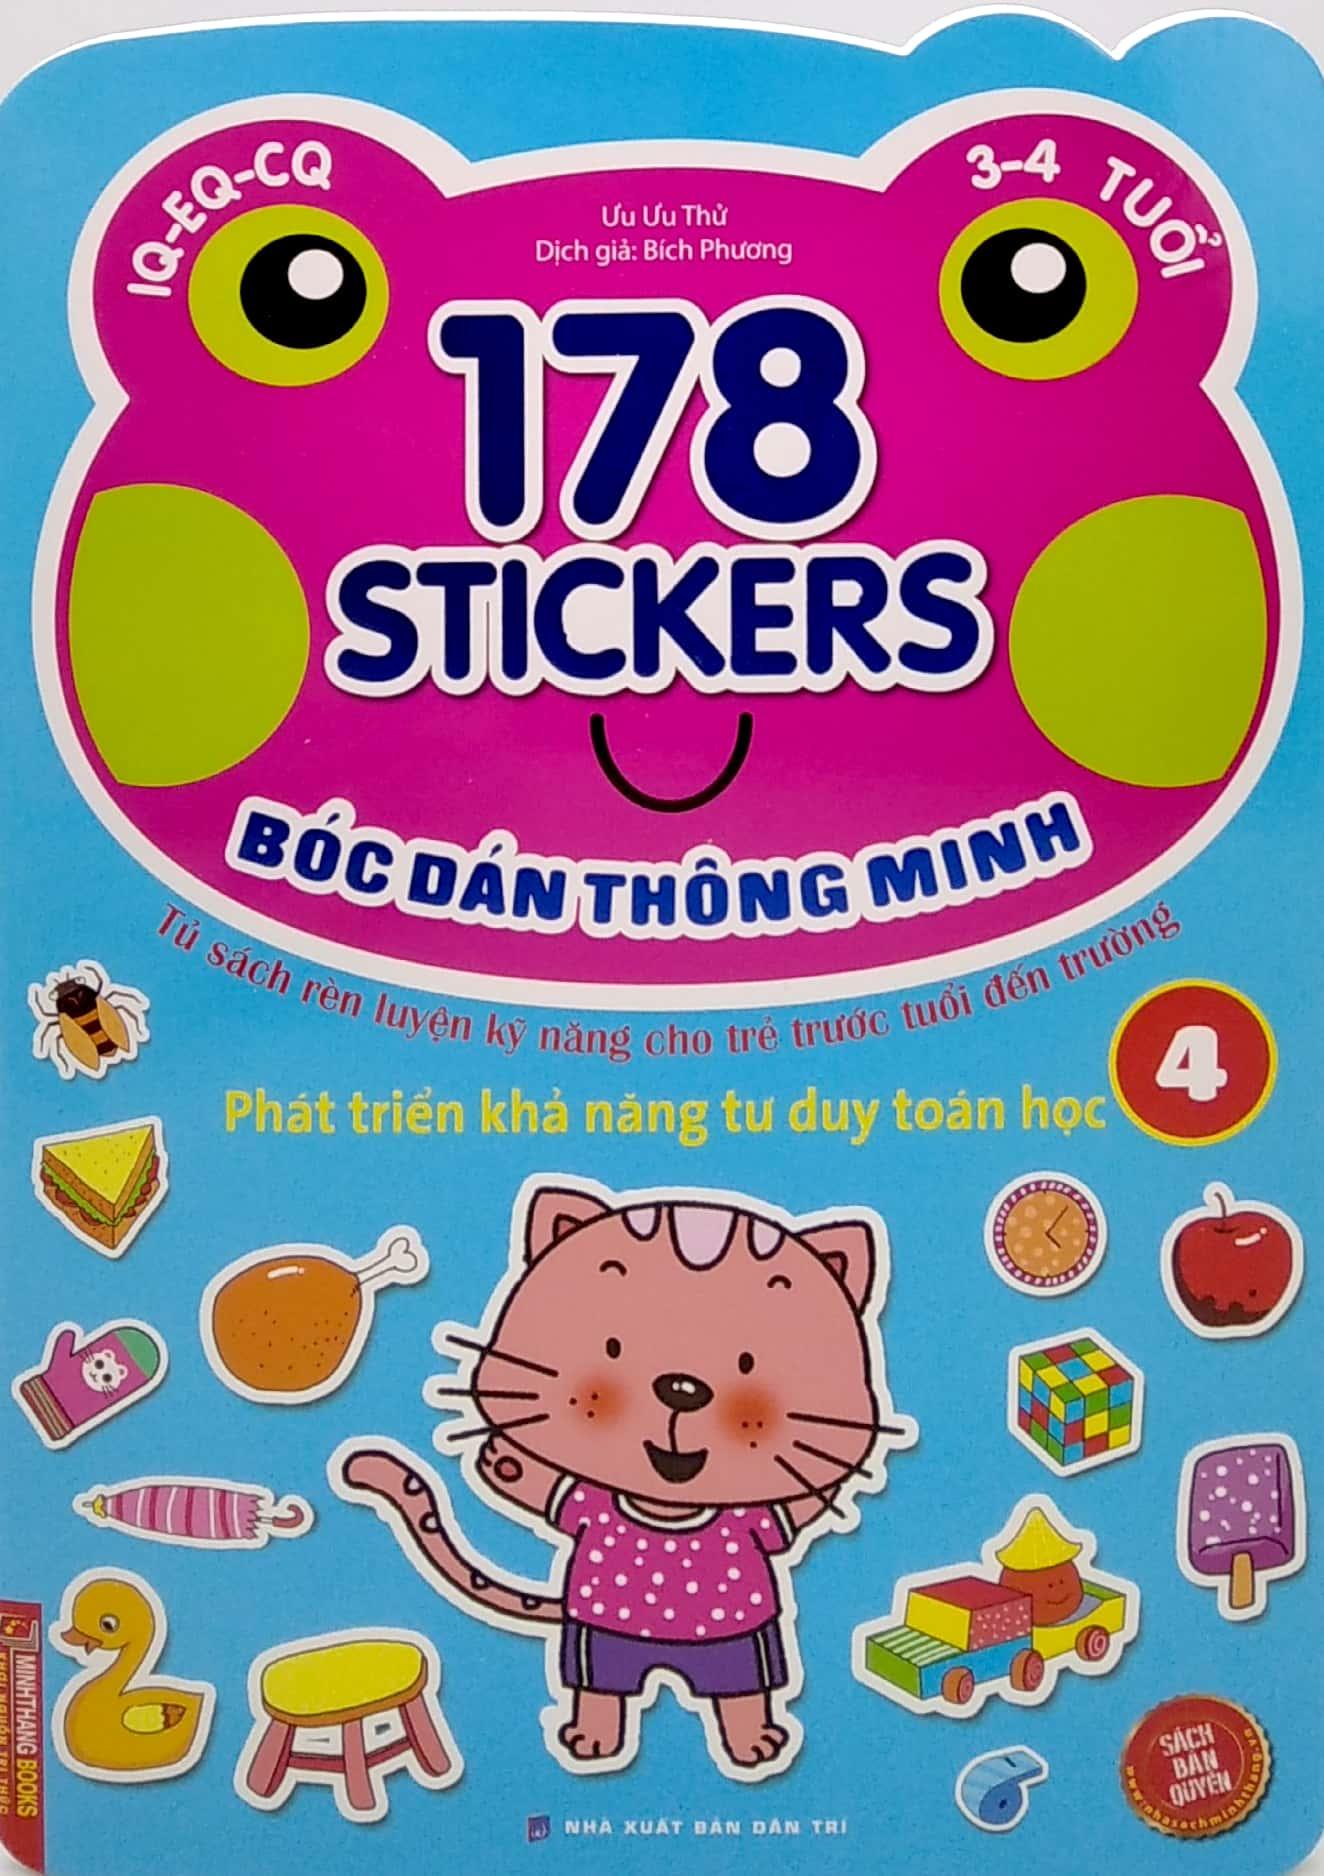 Hình ảnh 178 Stickers - Bóc Dán Thông Minh Phát Triển Khả Năng Tư Duy Toán Học (3 - 4 Tuổi) - Tập 4